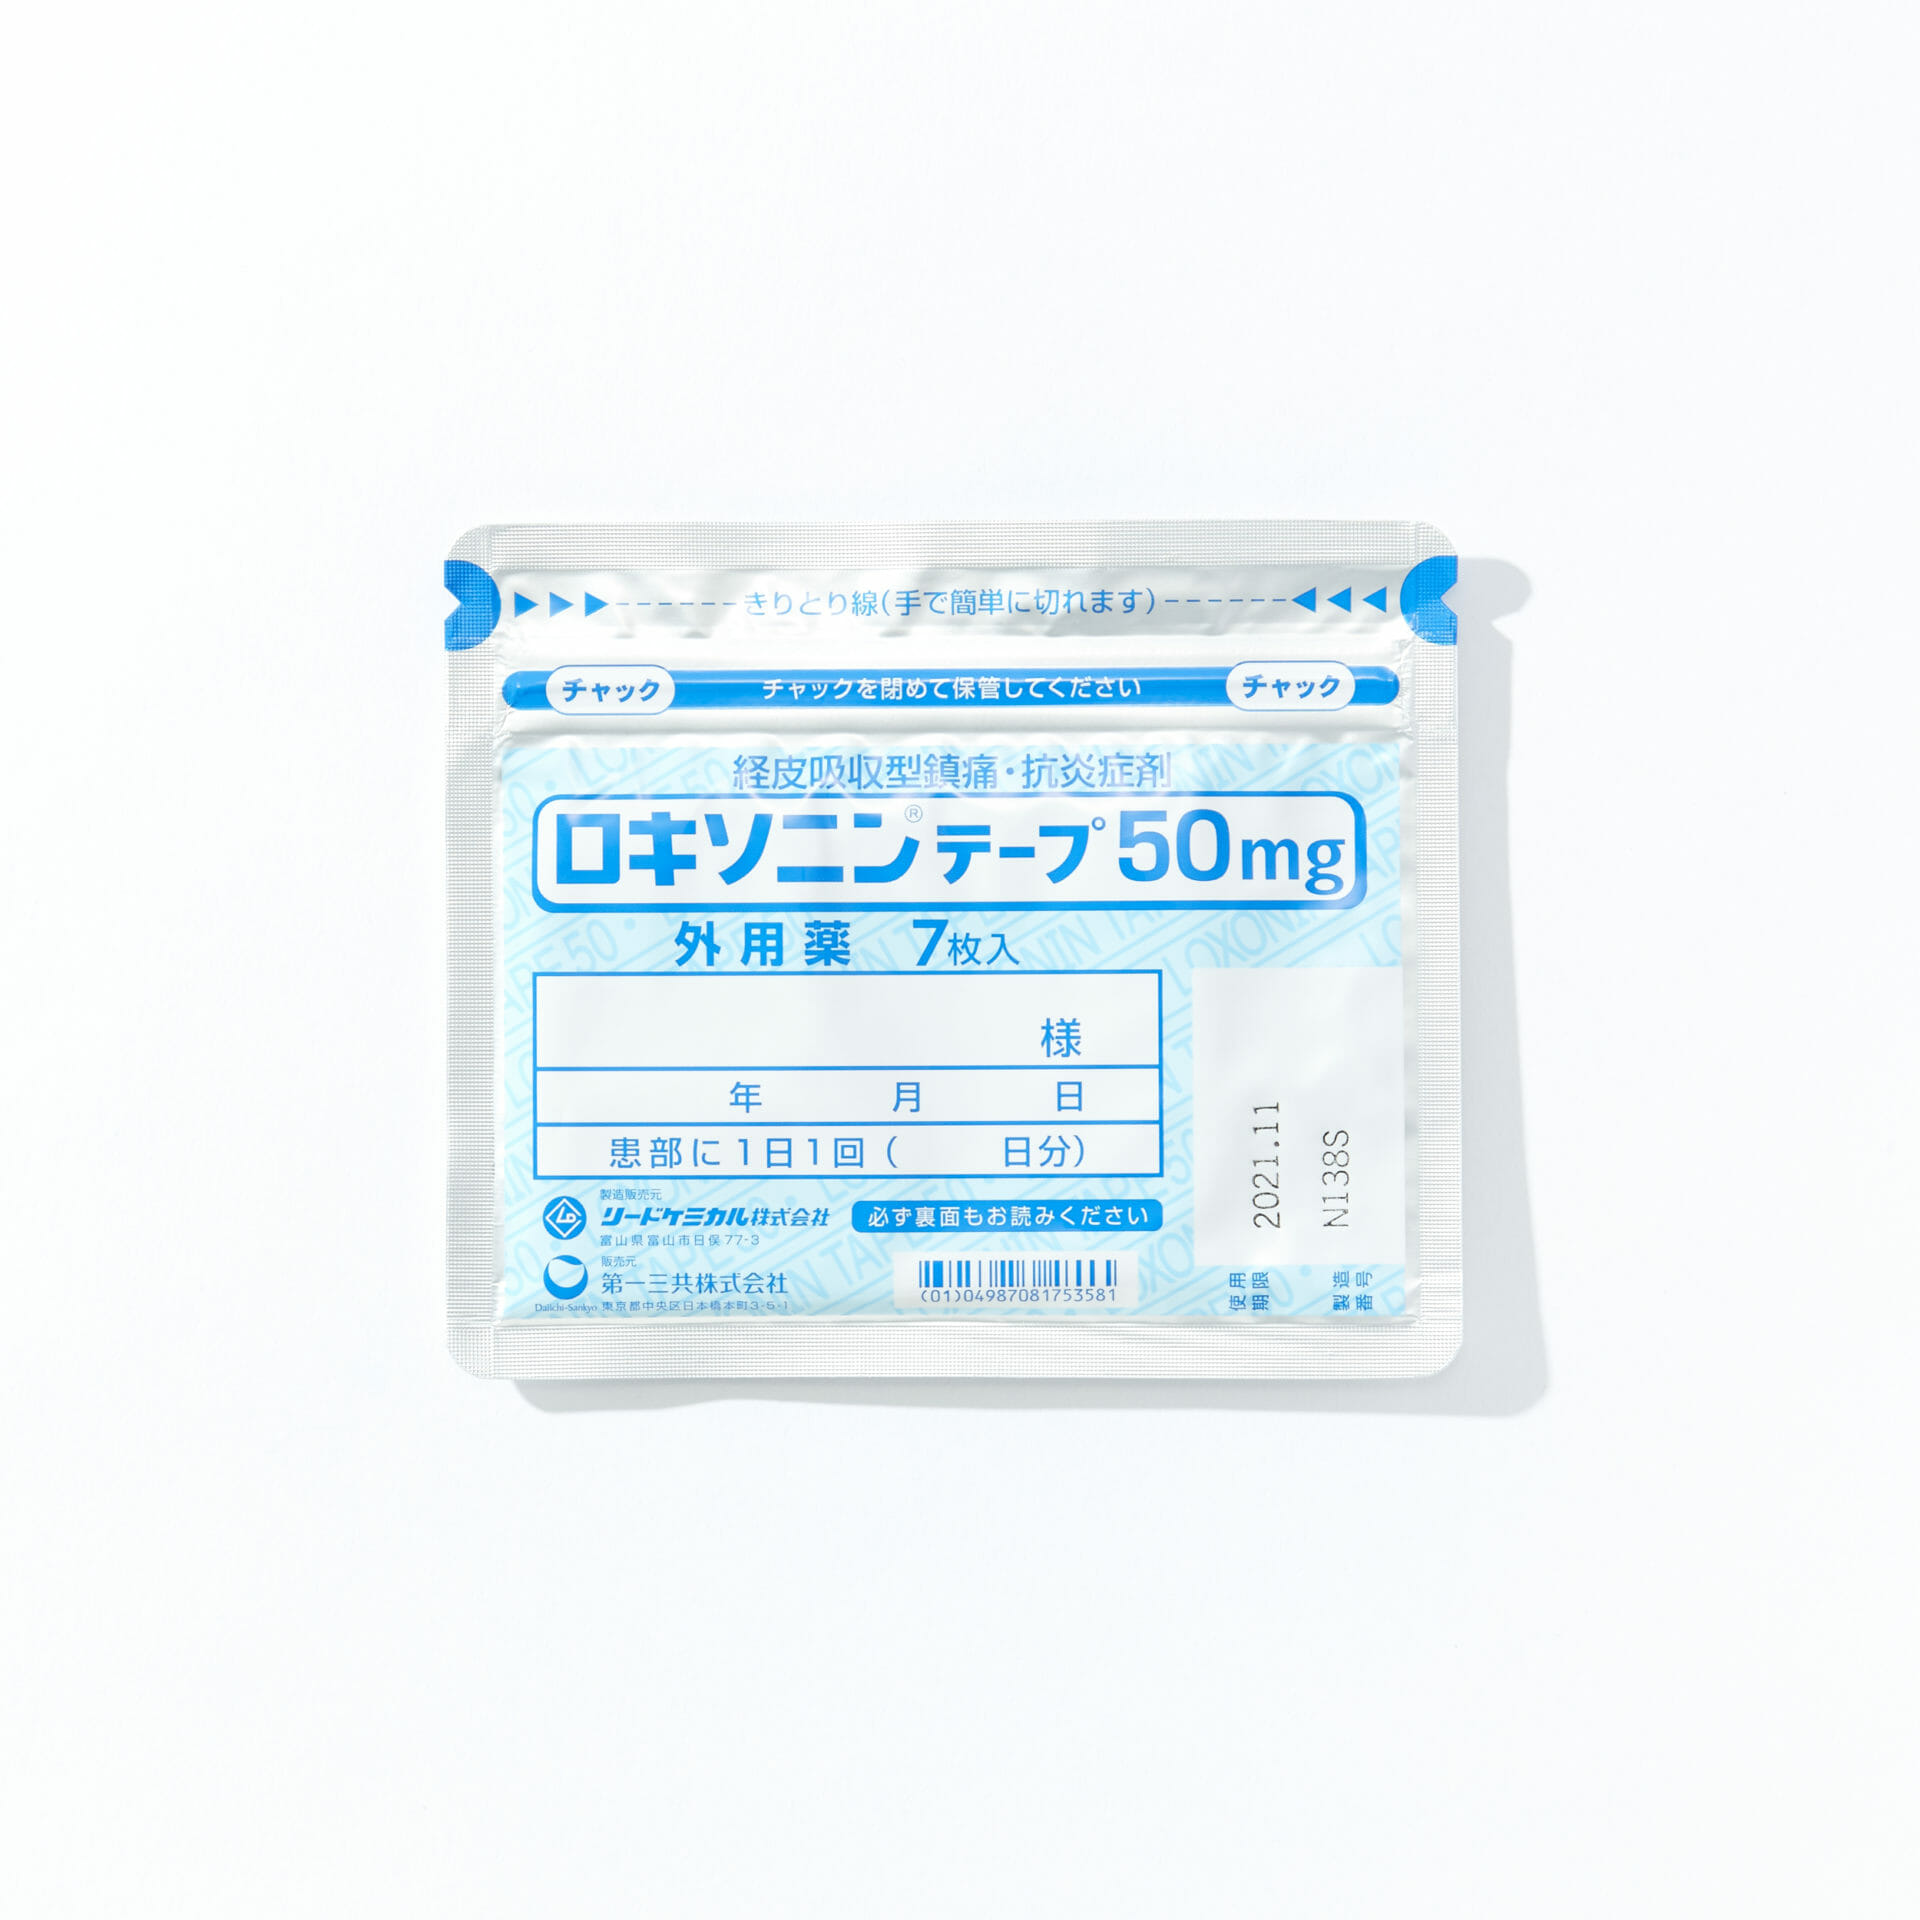 ロキソニンテープは市販薬で販売してる 腰痛や肩こり 関節の痛みに効く湿布薬の特徴や販売の詳細について解説 公式 Sokuyaku